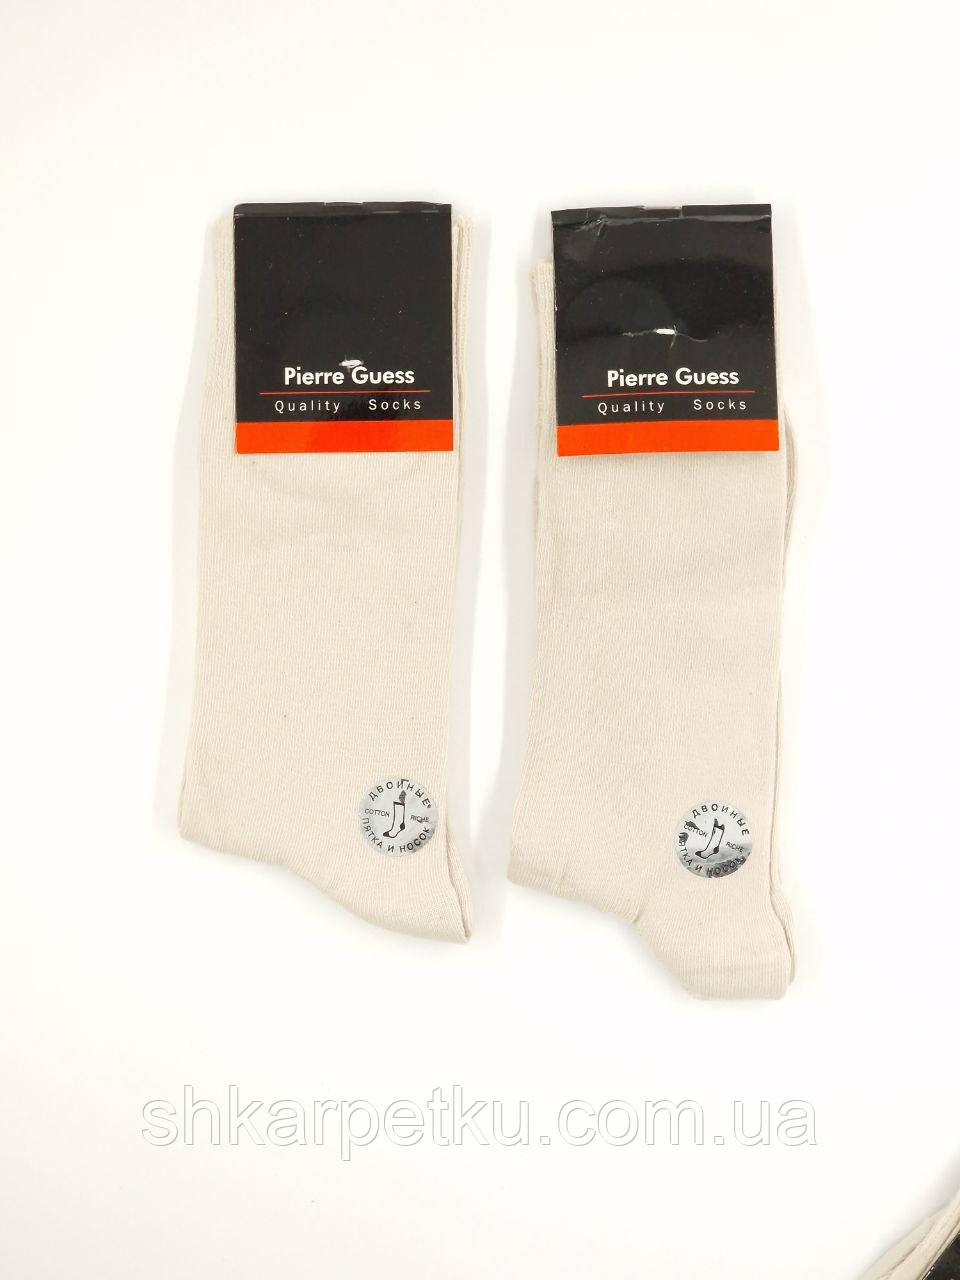 Чоловічі високі шкарпетки  Pierre Guess, літні з бавовни, ароматизовані, однотонні, розмір 41-44 12 пар/уп. молочні